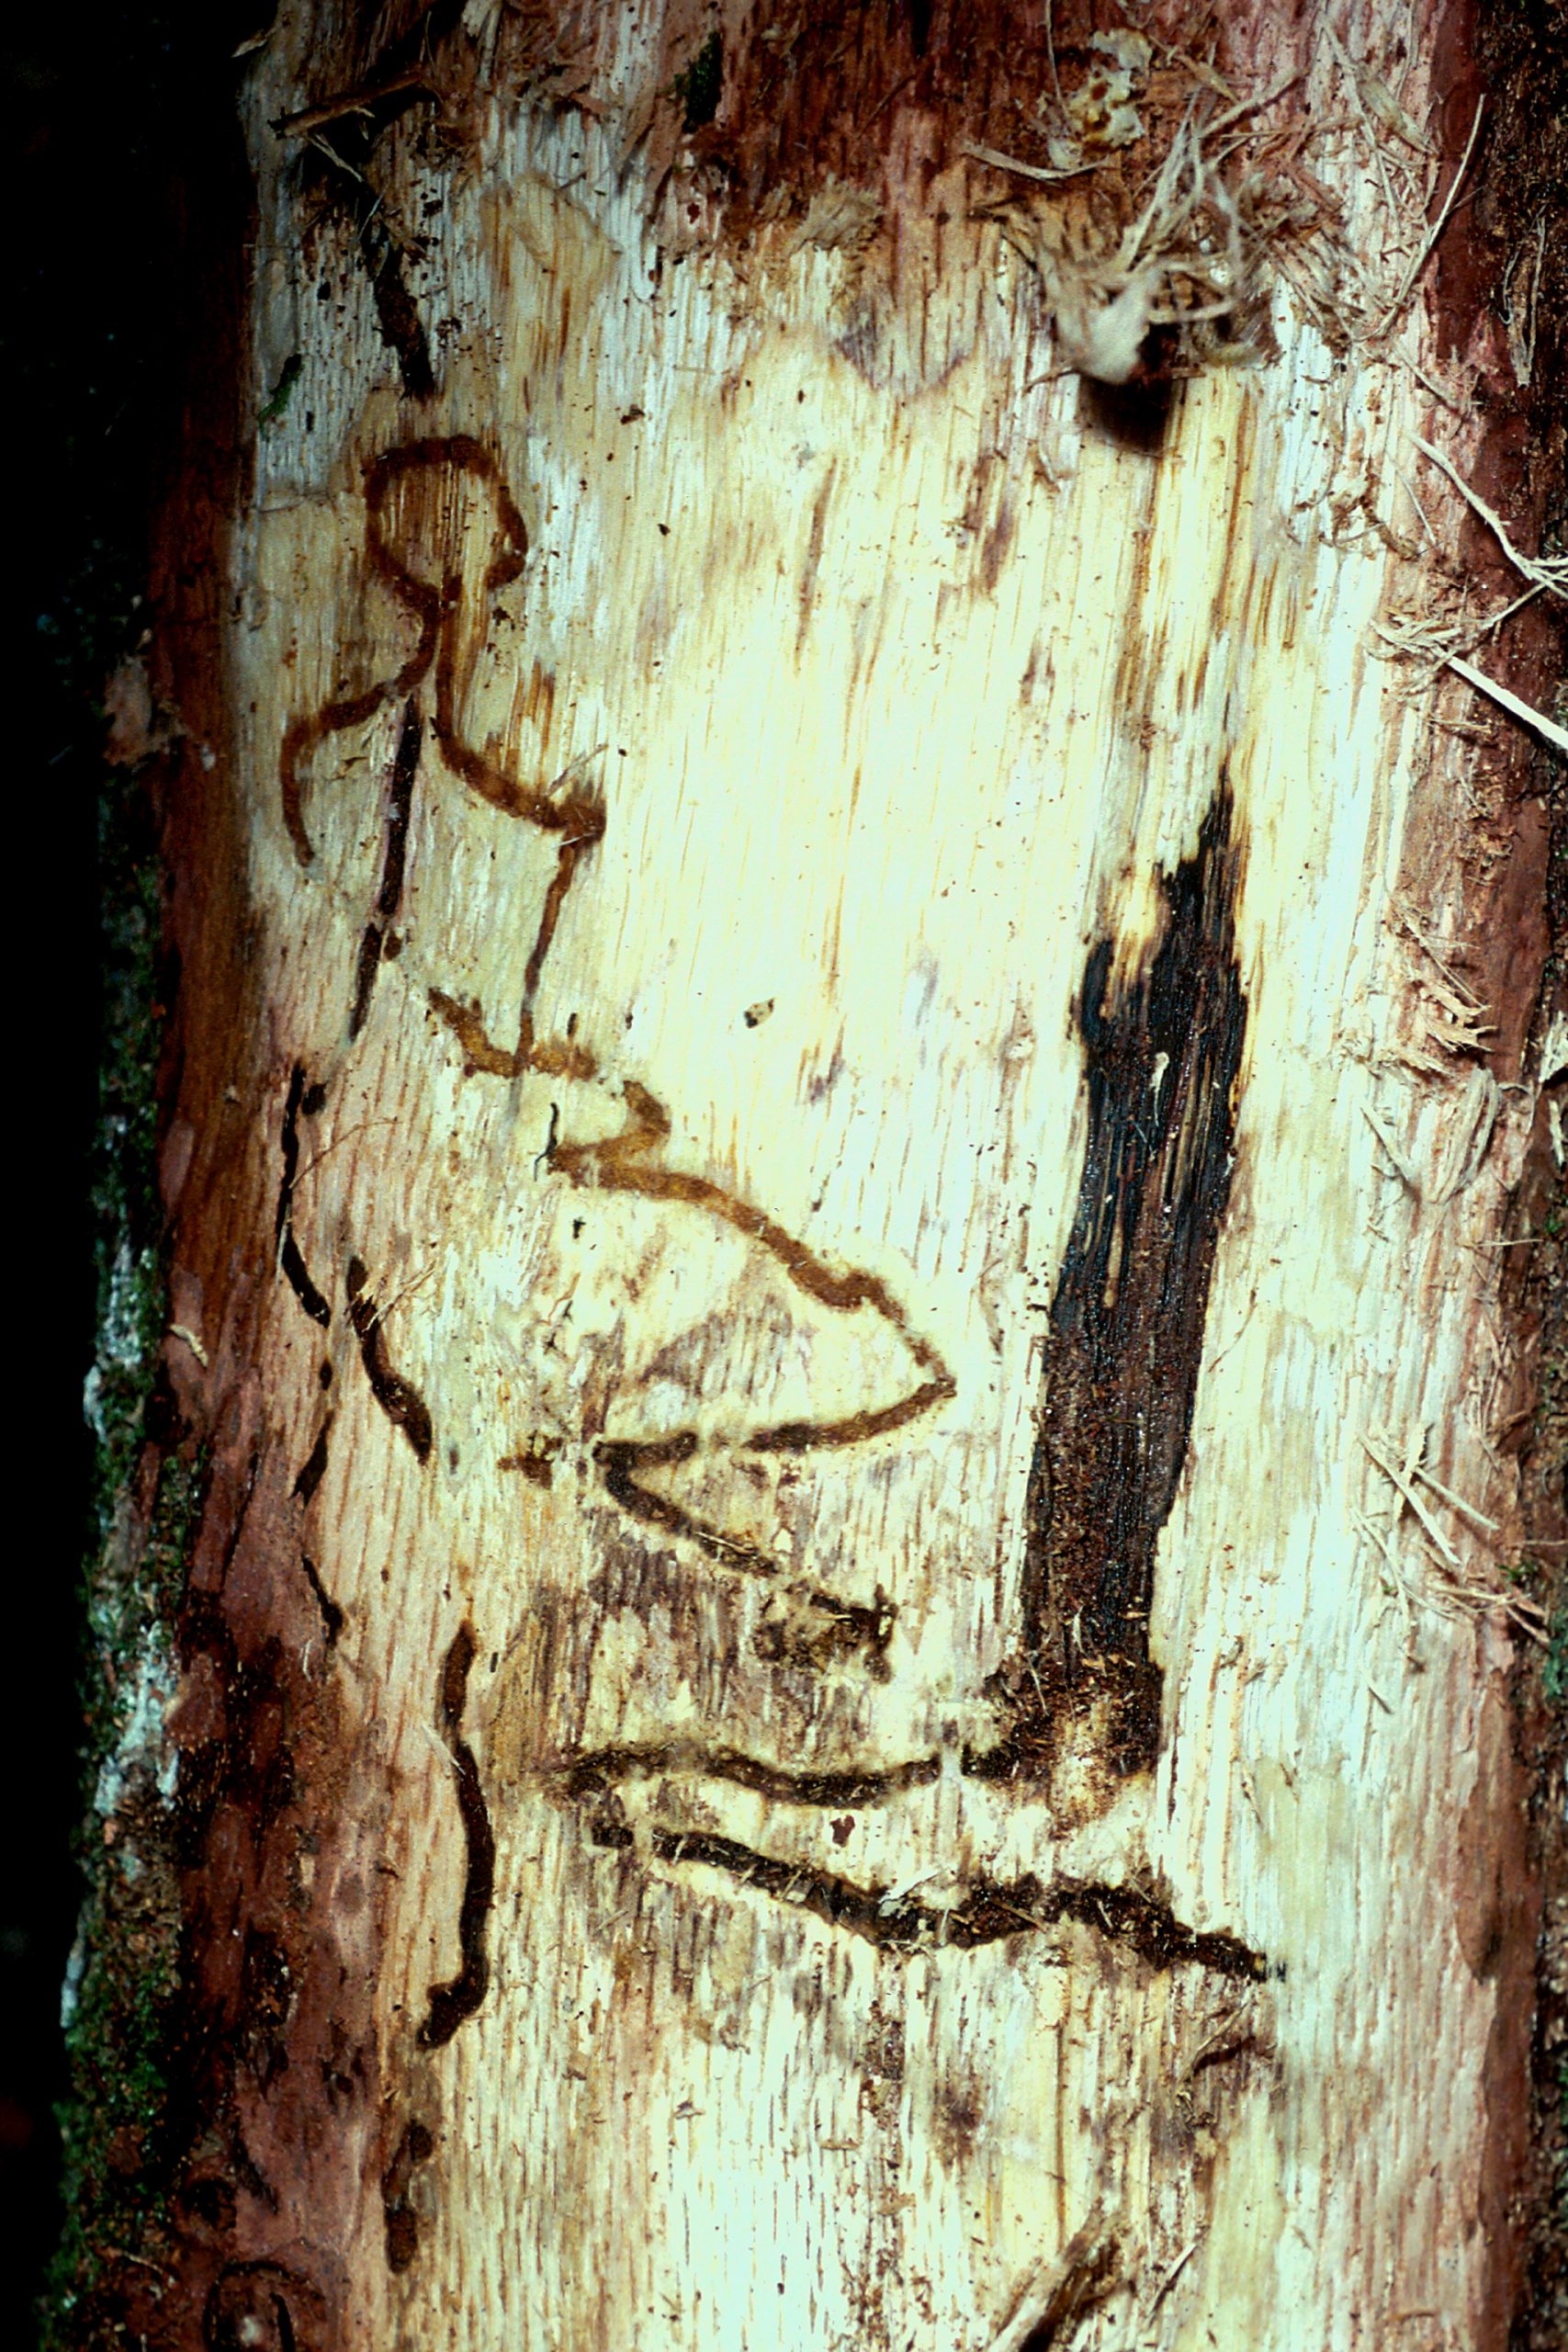 Galleries of two-spotted oak buprestid Agrilus biguttatus, Louis-Michel Nageleisen, Département de la Santé des Forêts, Bugwood.jpg